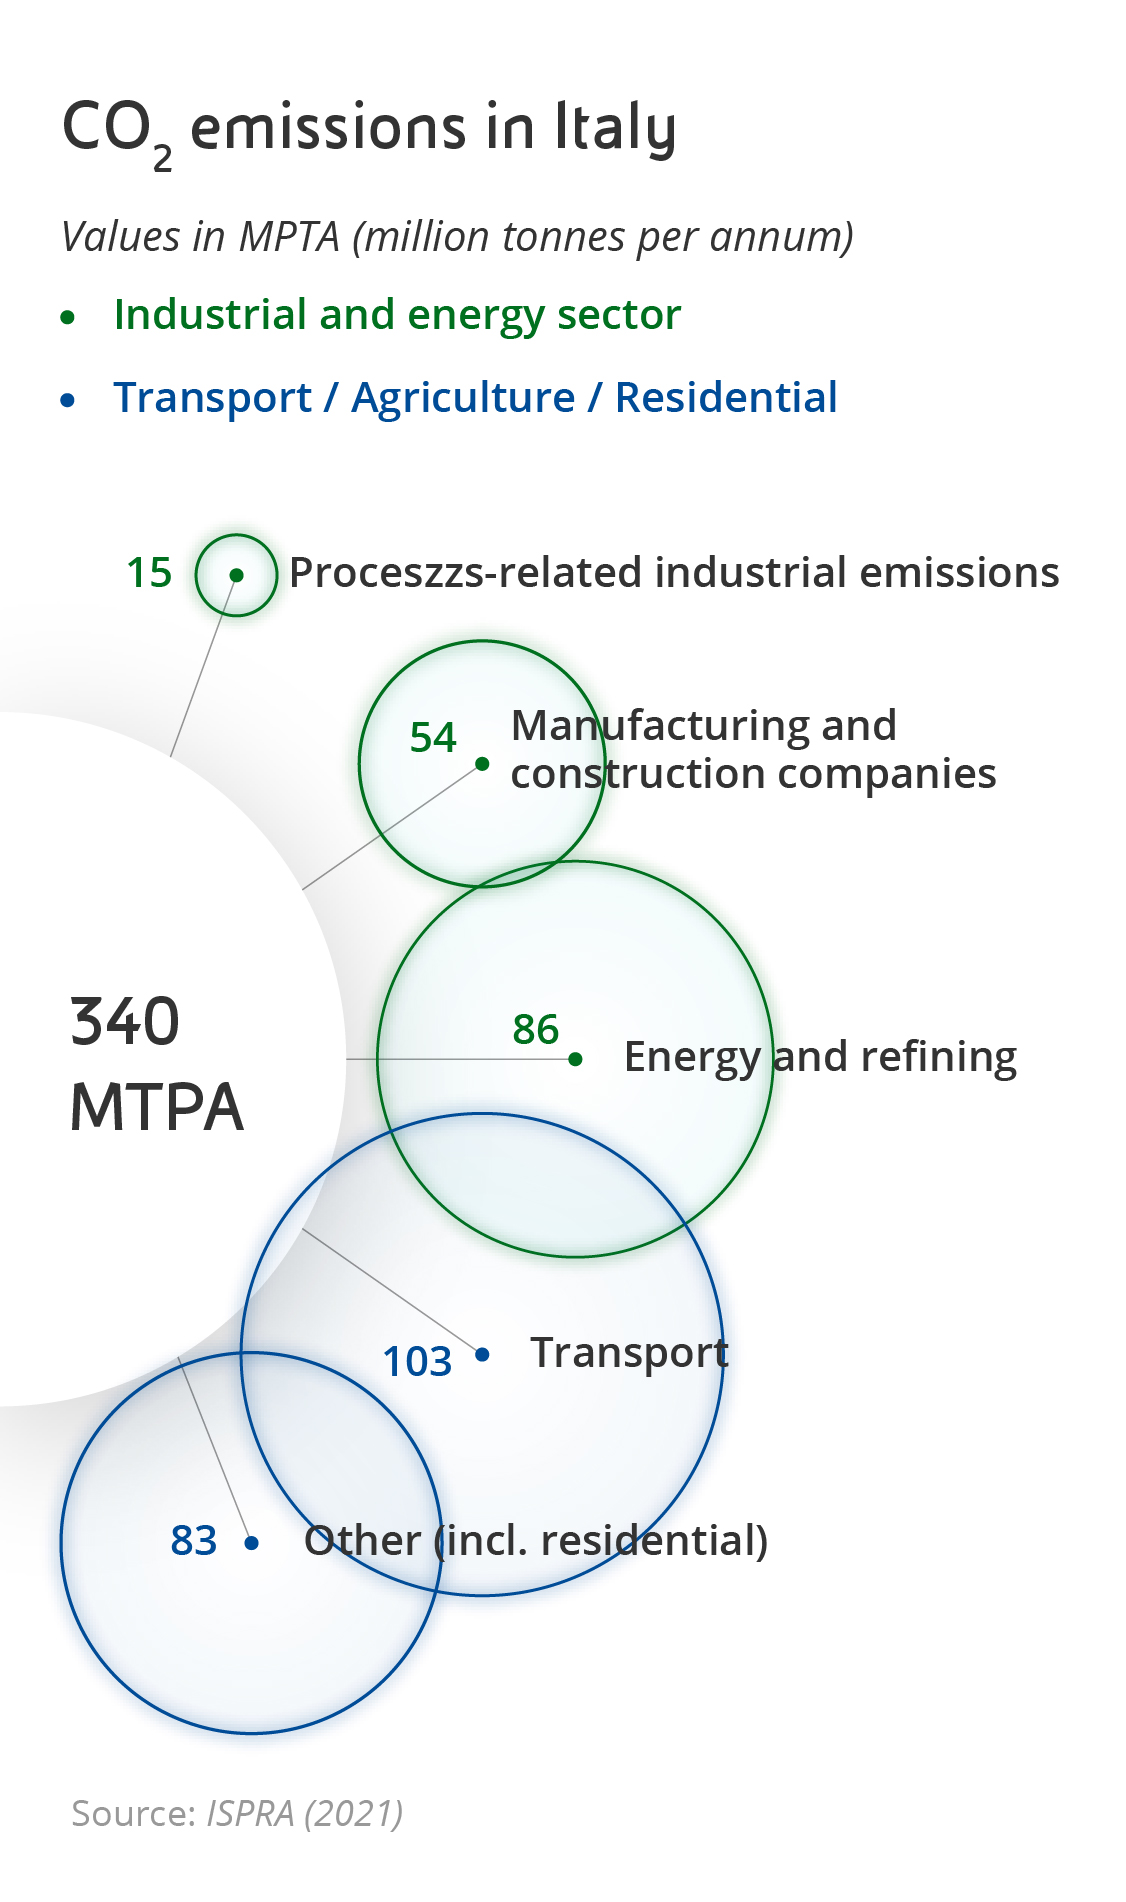 ccs-strategia-decarbonizzazione-infografica1-mobile.jpg